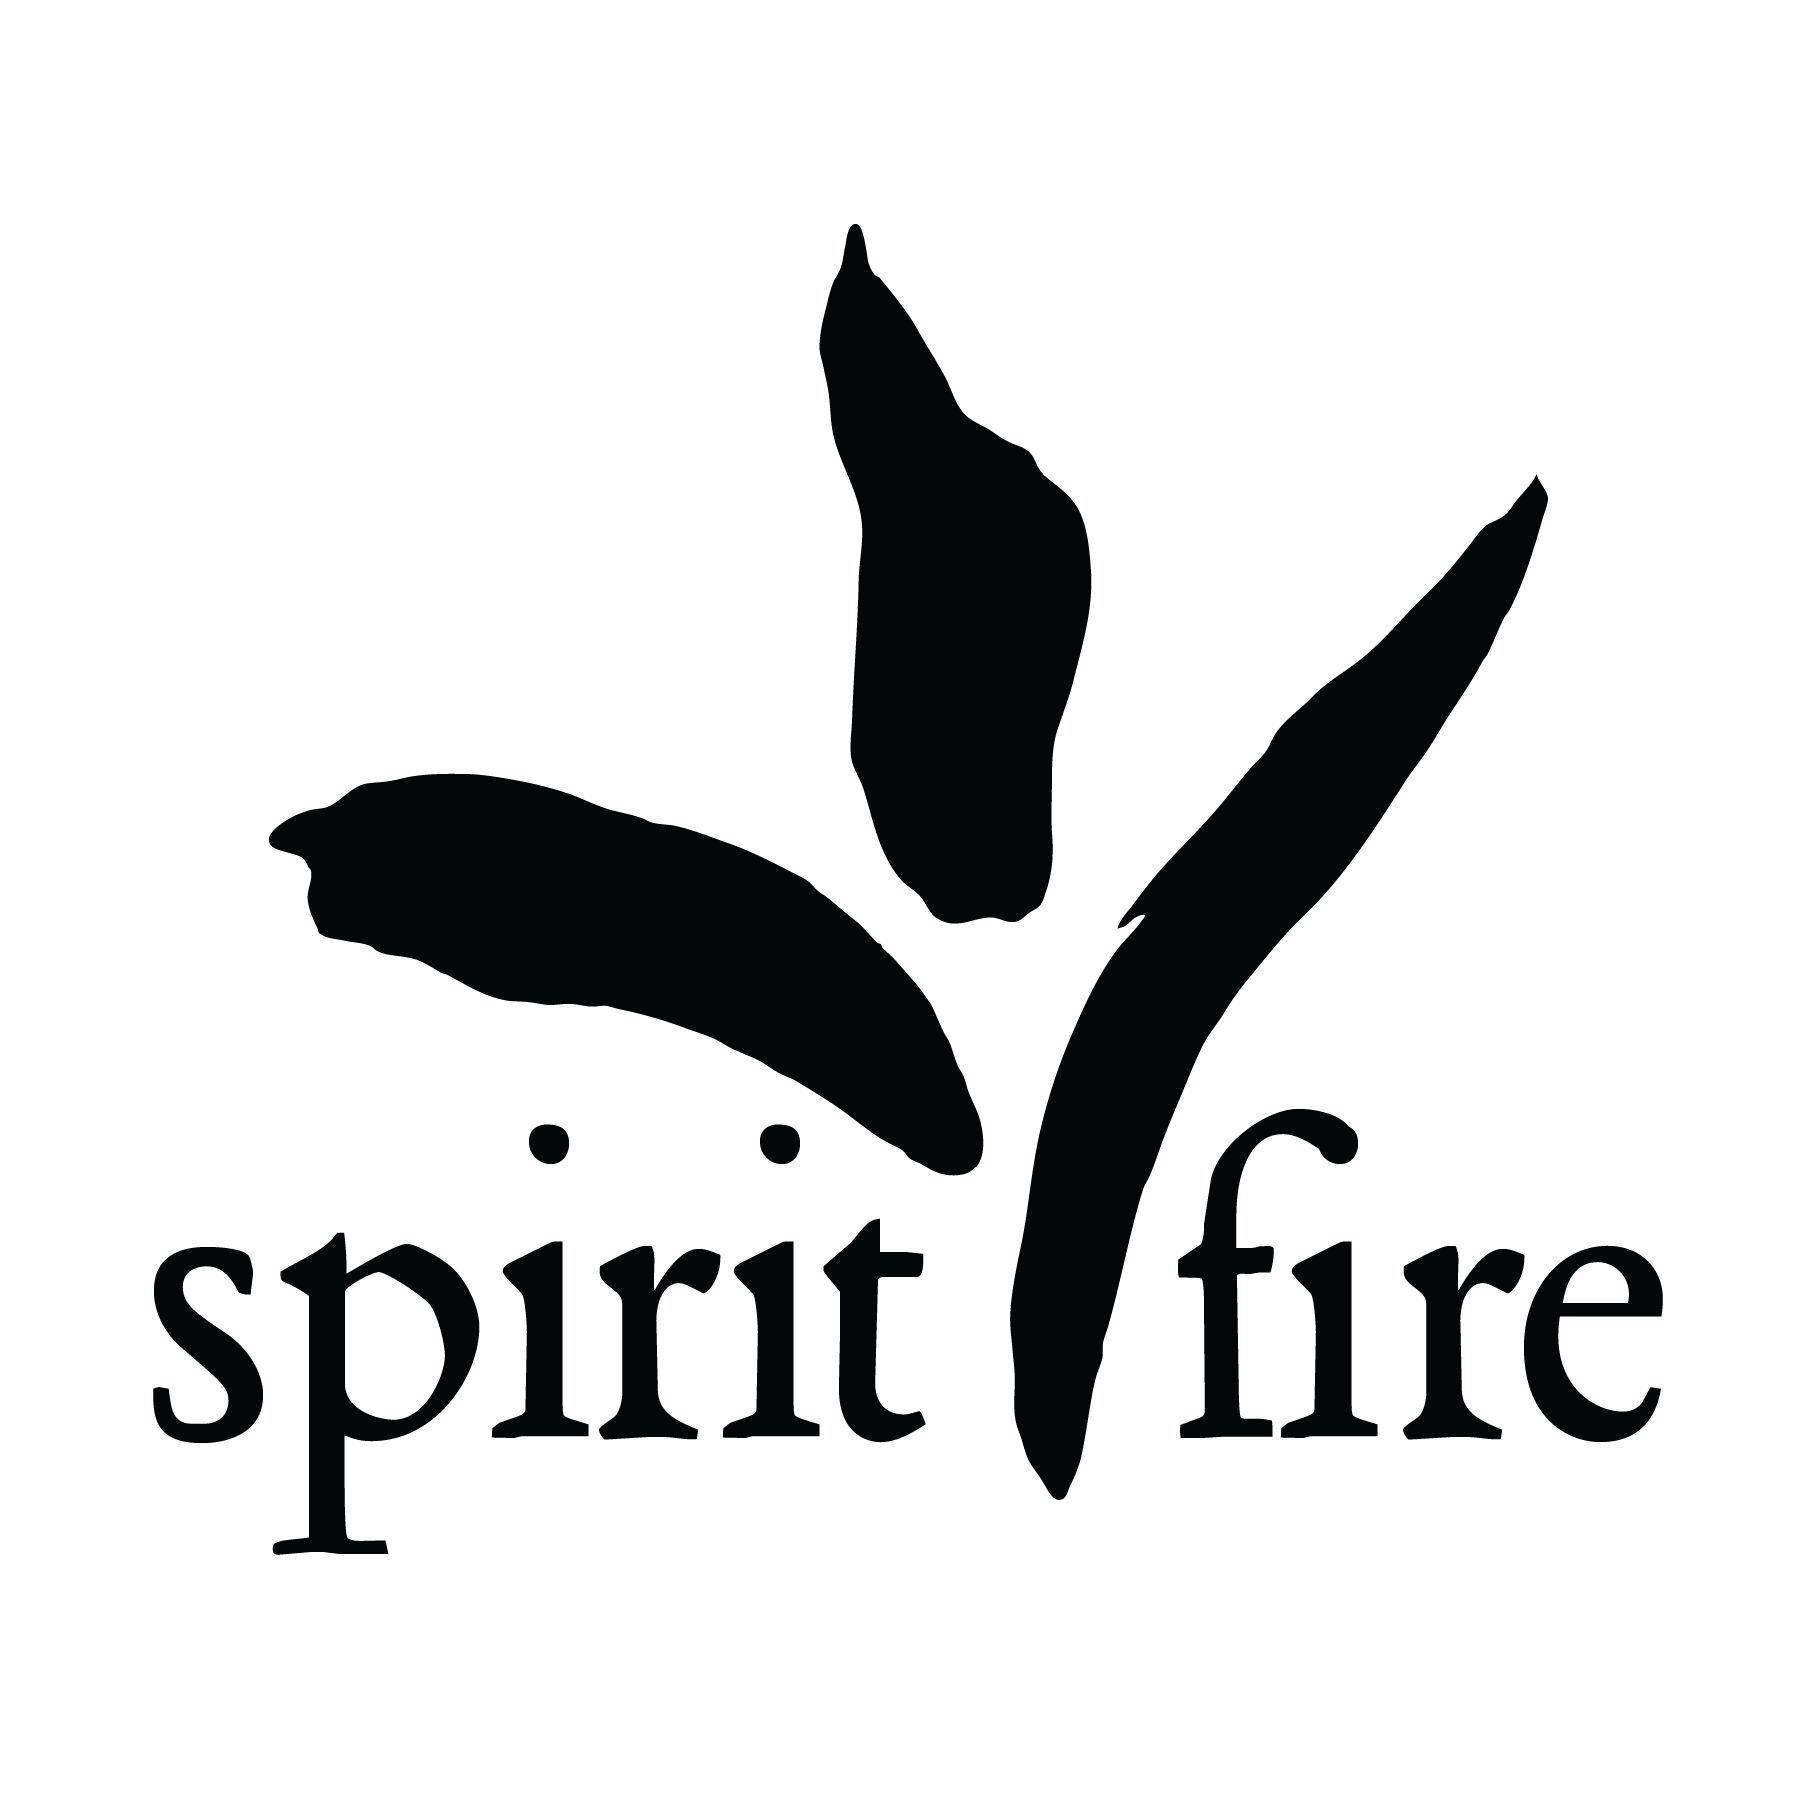 Spirit Fire